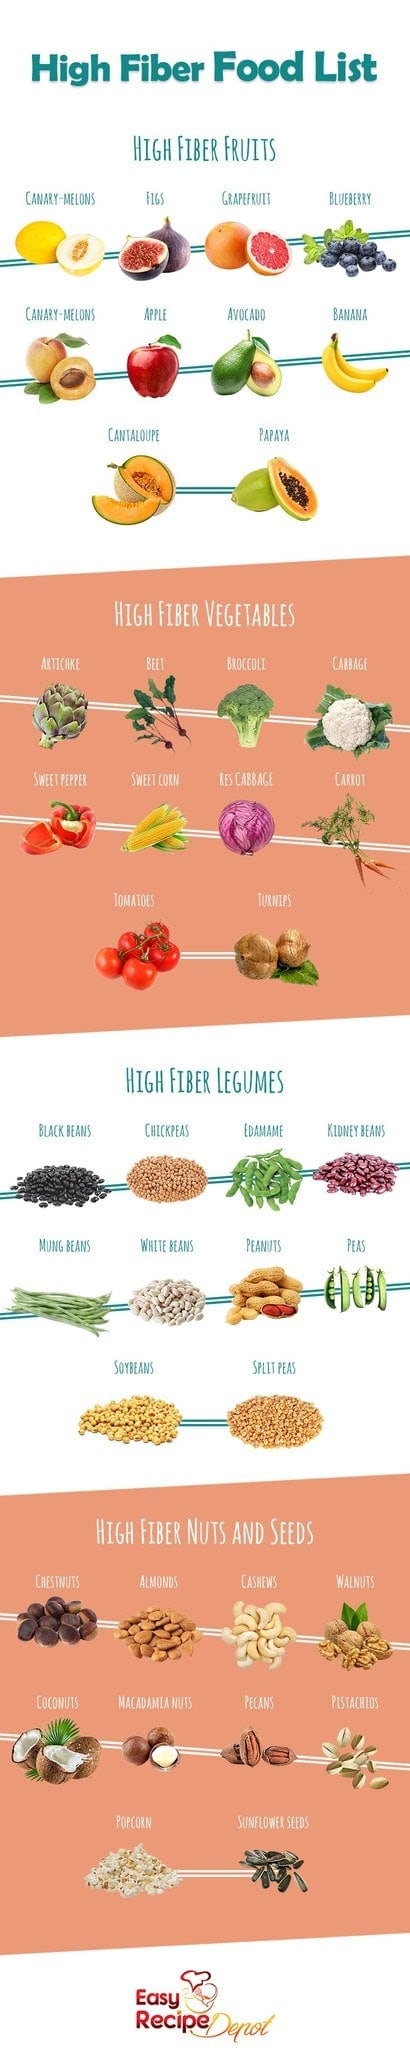 high fiber food chart pdf